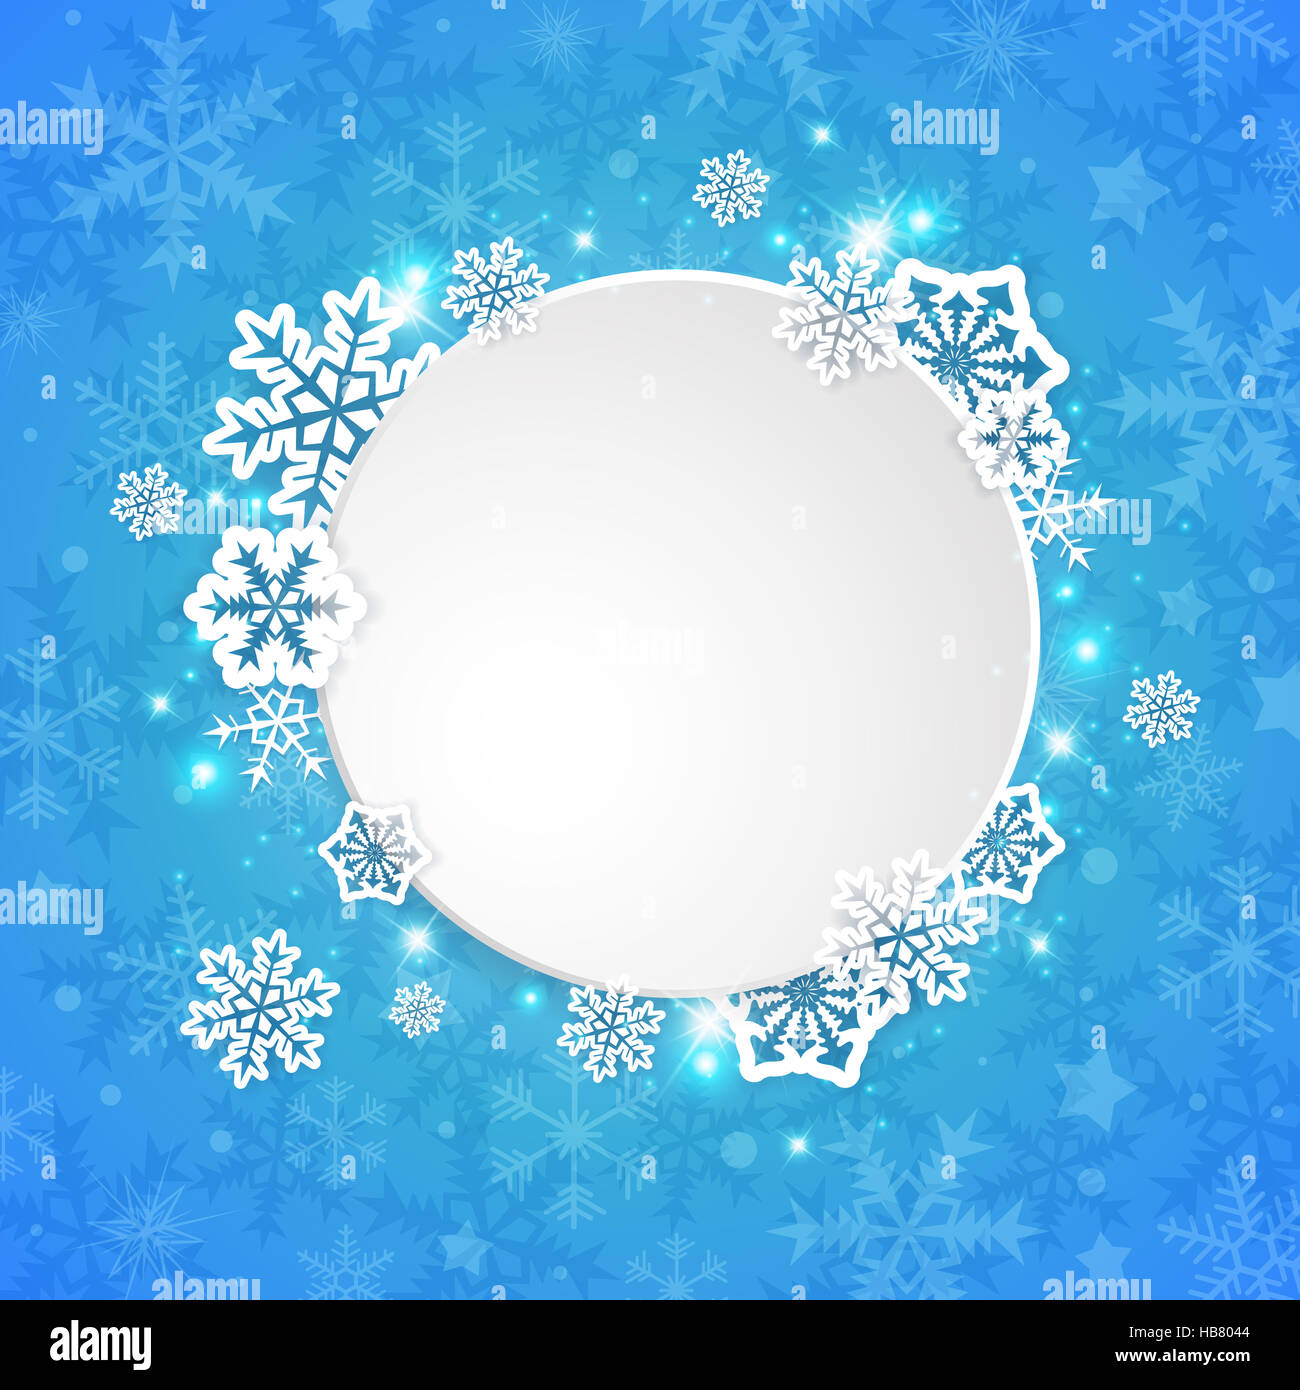 Abstract round banner di Natale con il Libro bianco di fiocchi di neve su sfondo blu. Foto Stock